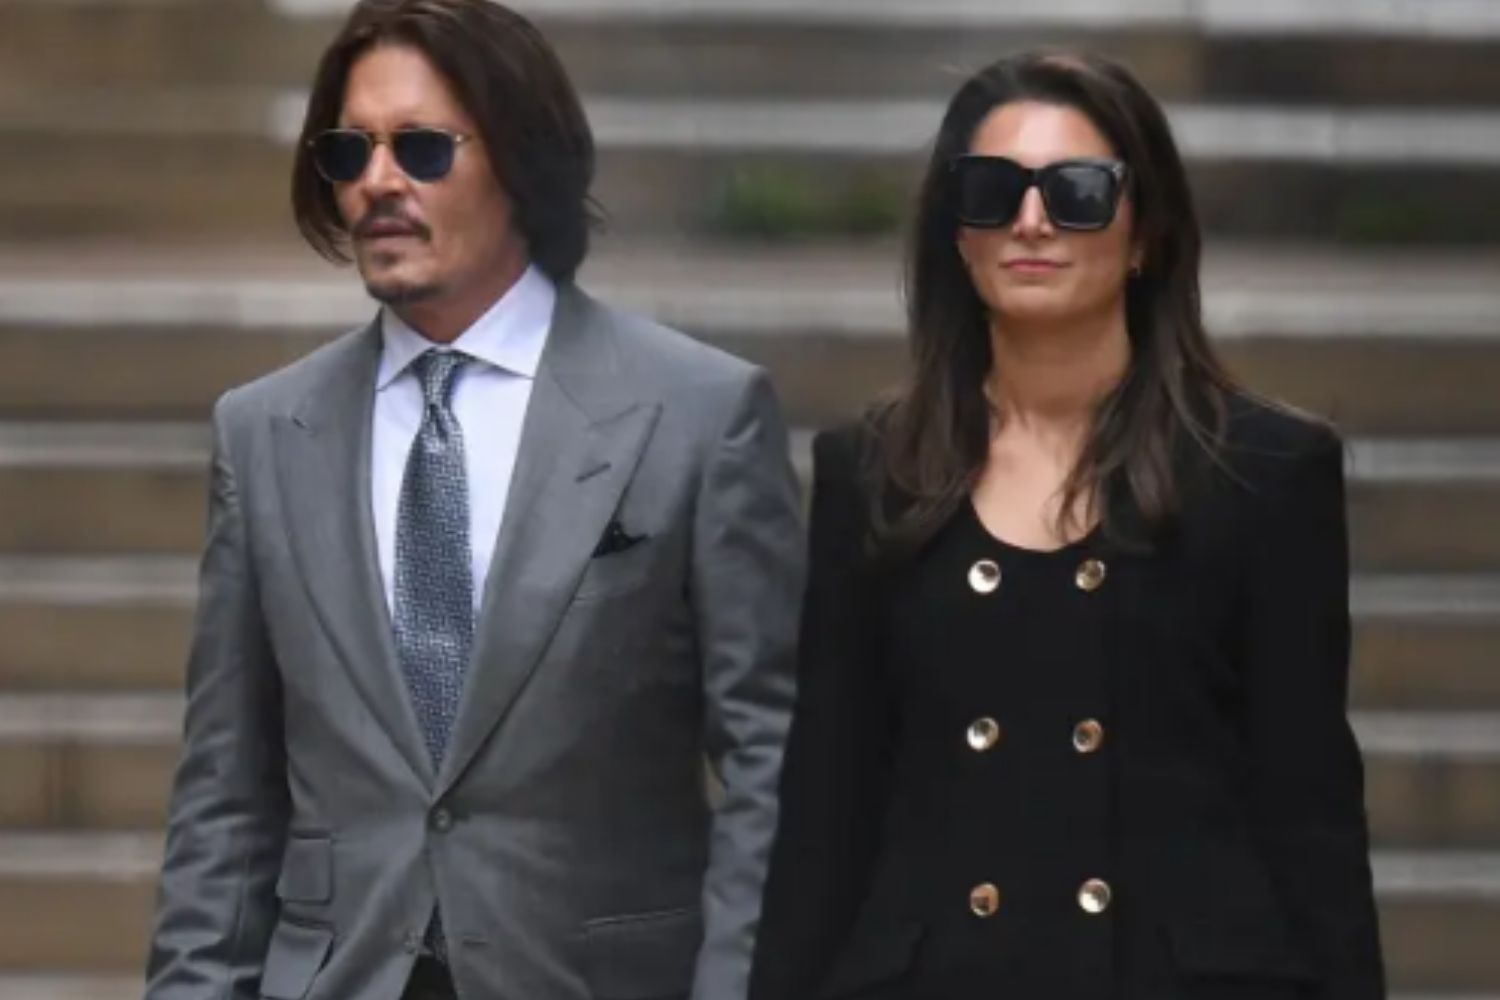 Johnny Depp vive relacionamento com advogada que está se divorciando,  afirma site - Estrelando